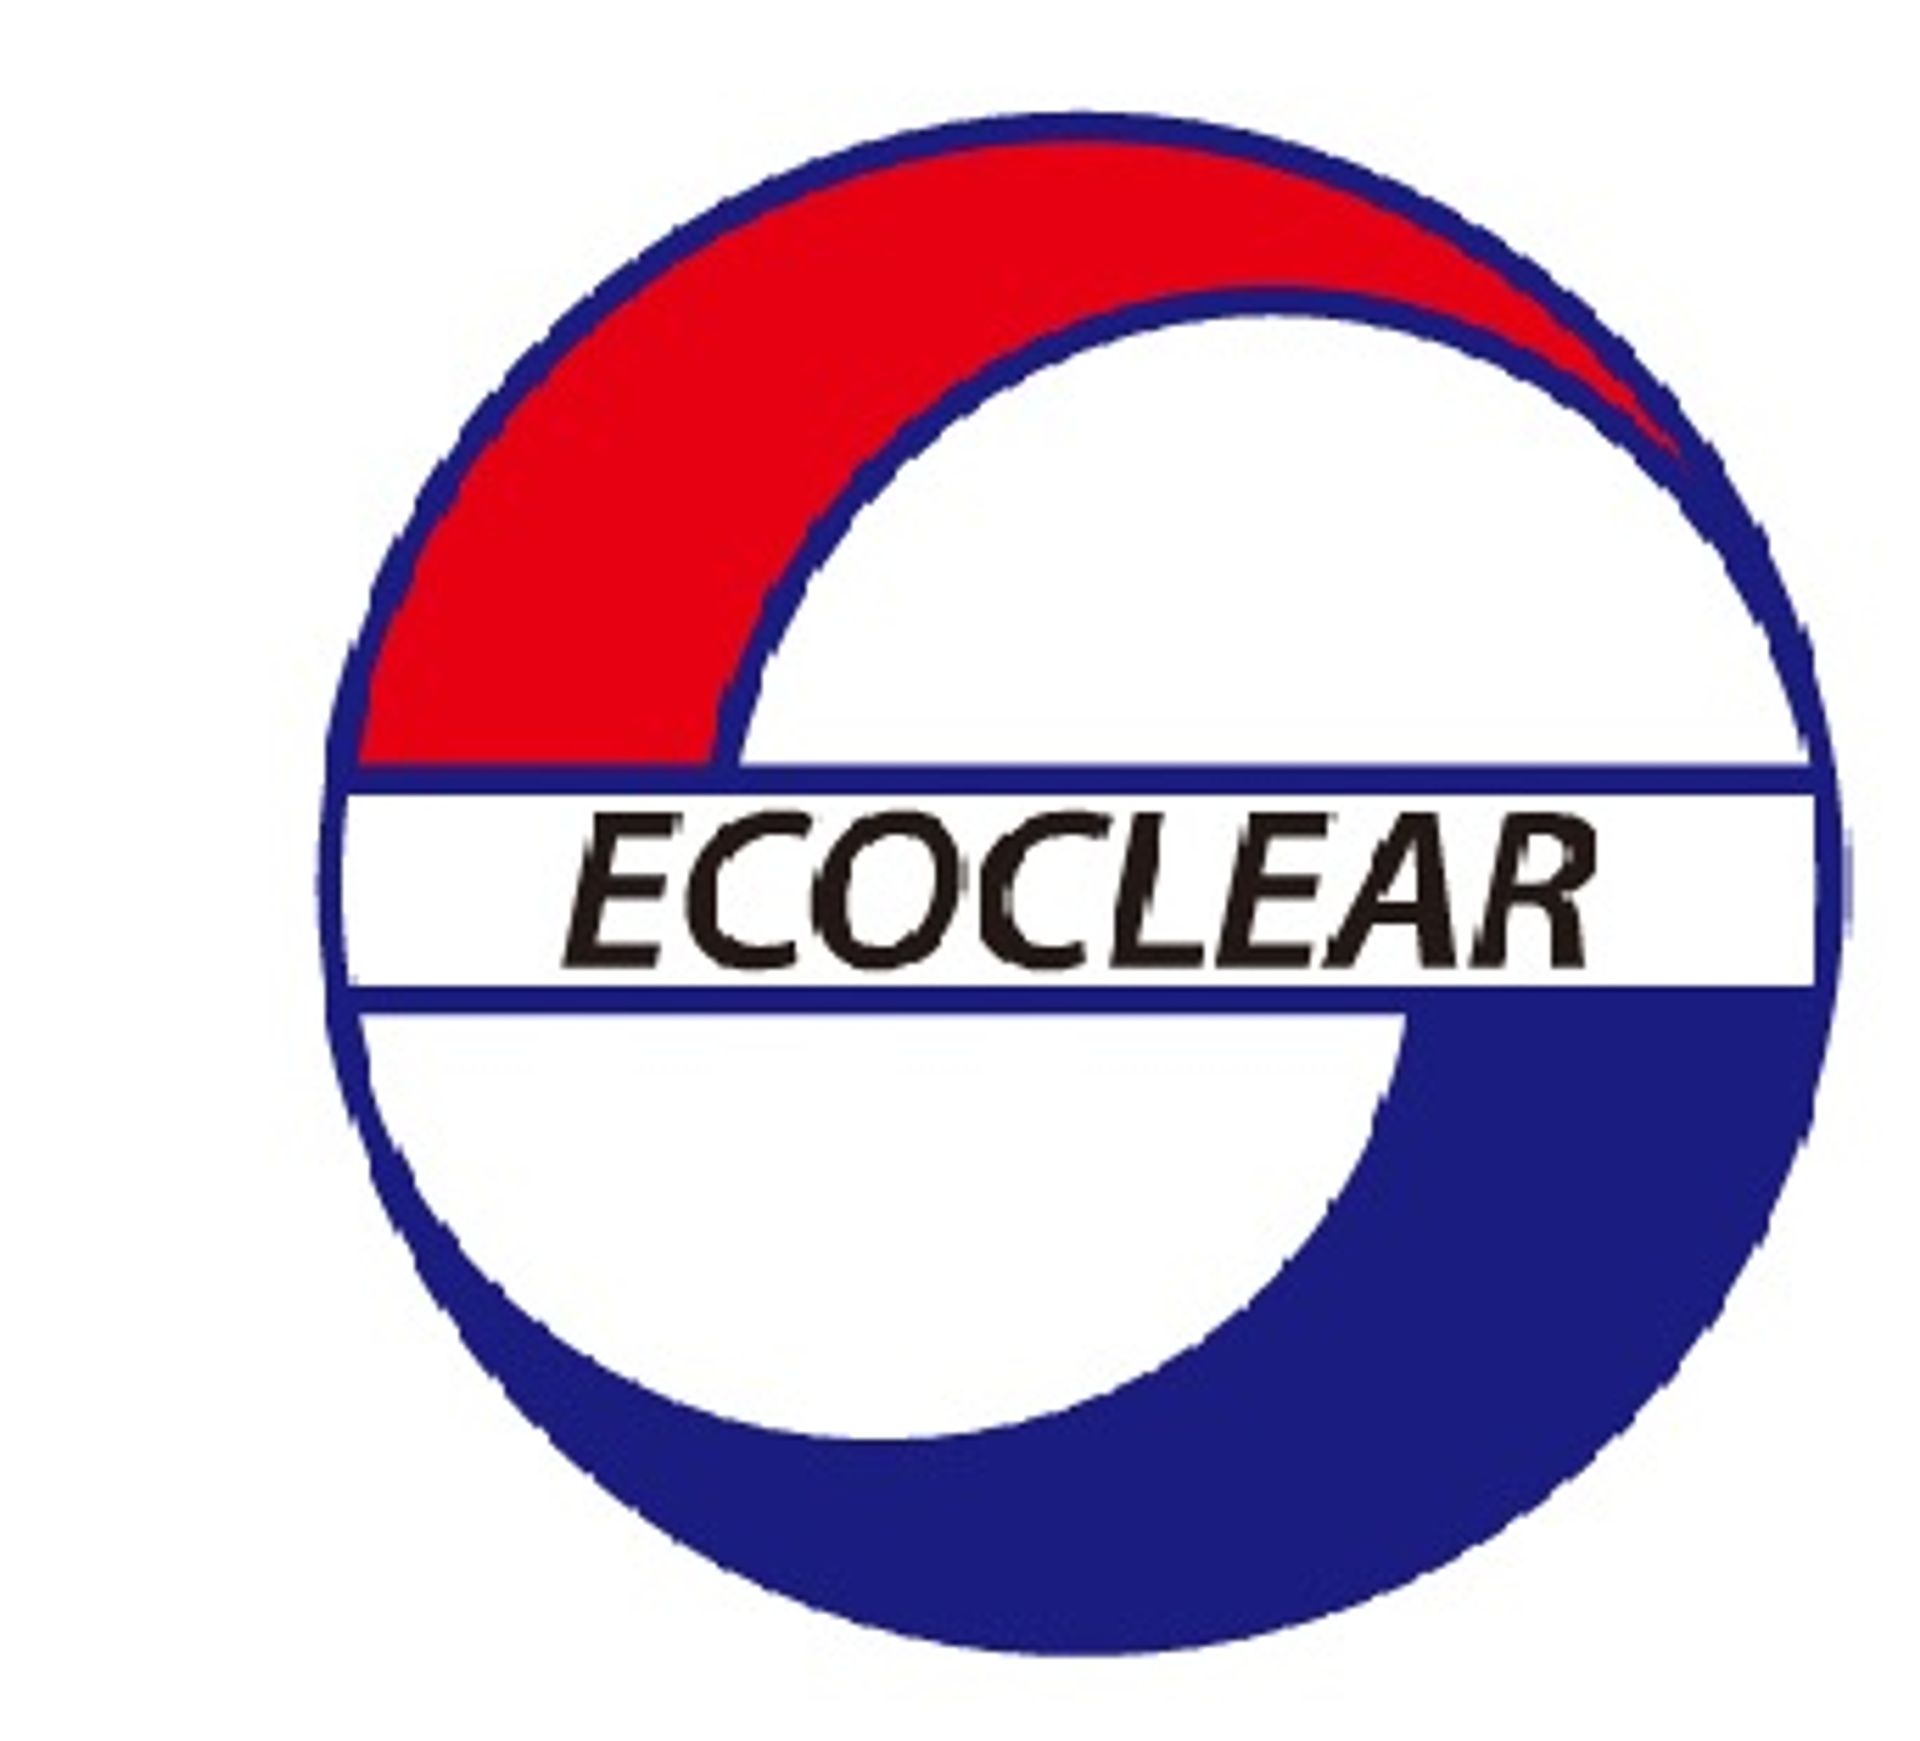 ECOCLEAR CO., LTD